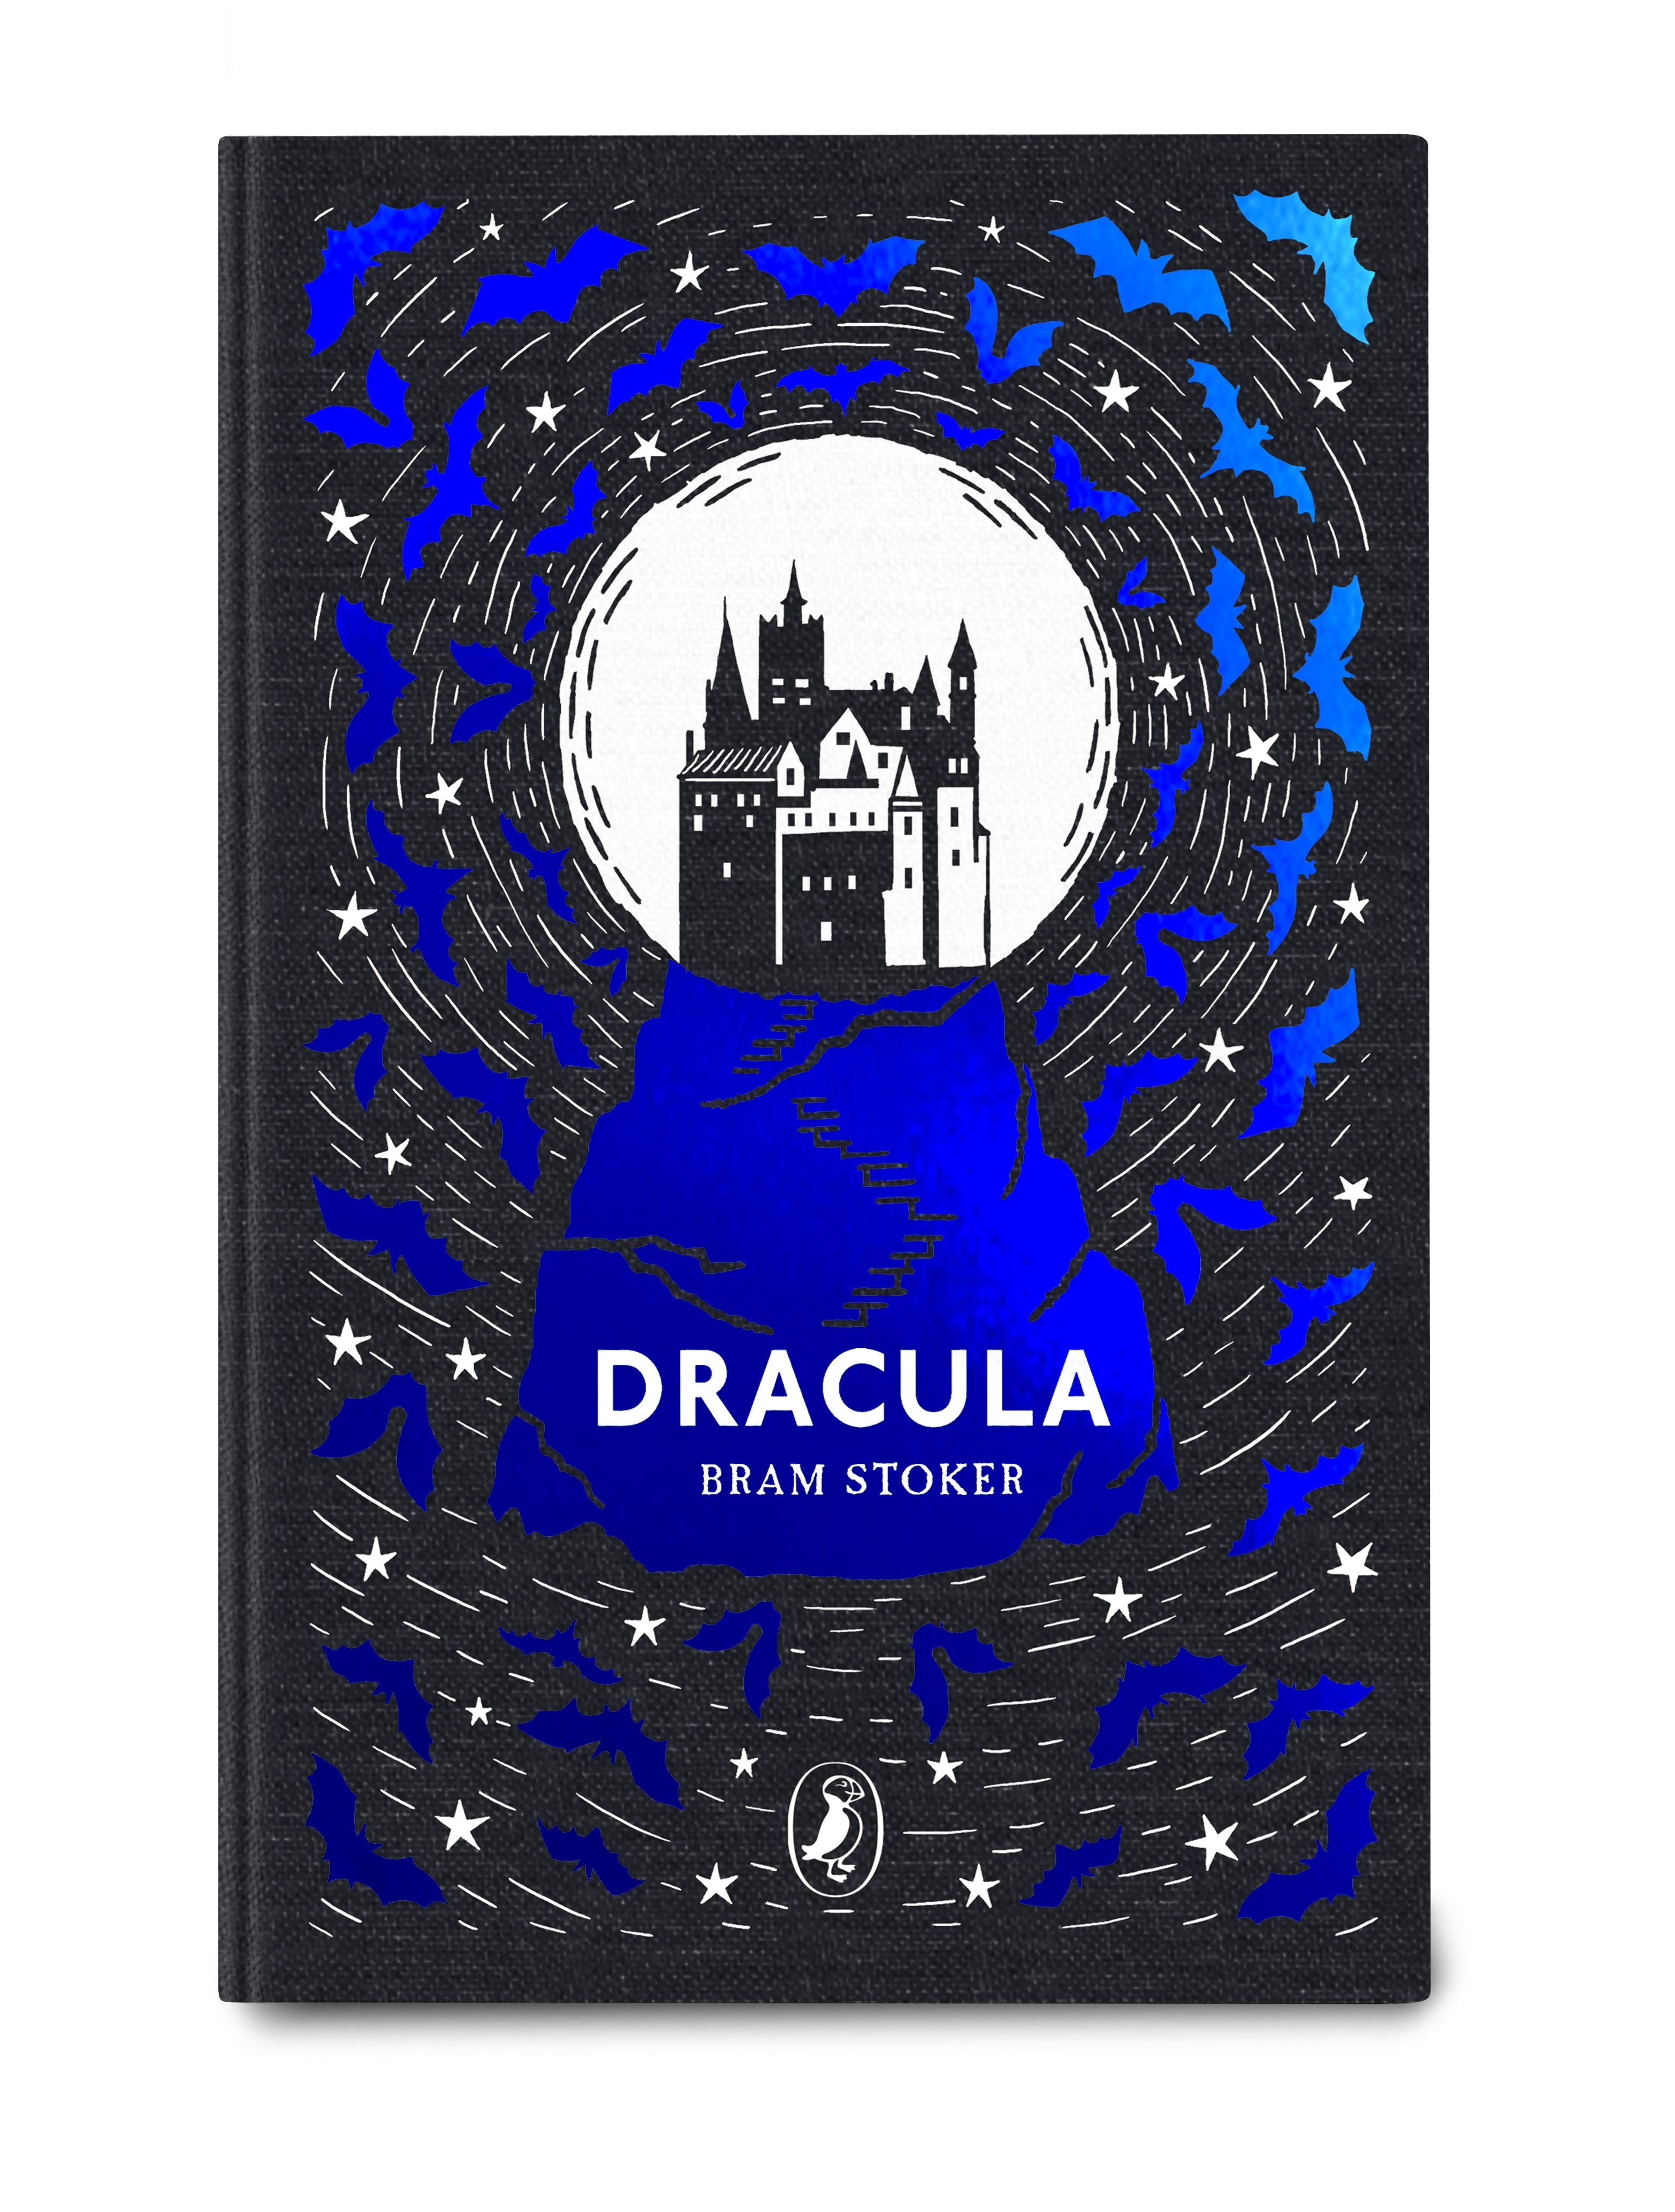 Book “Dracula” by Bram Stoker — September 5, 2019